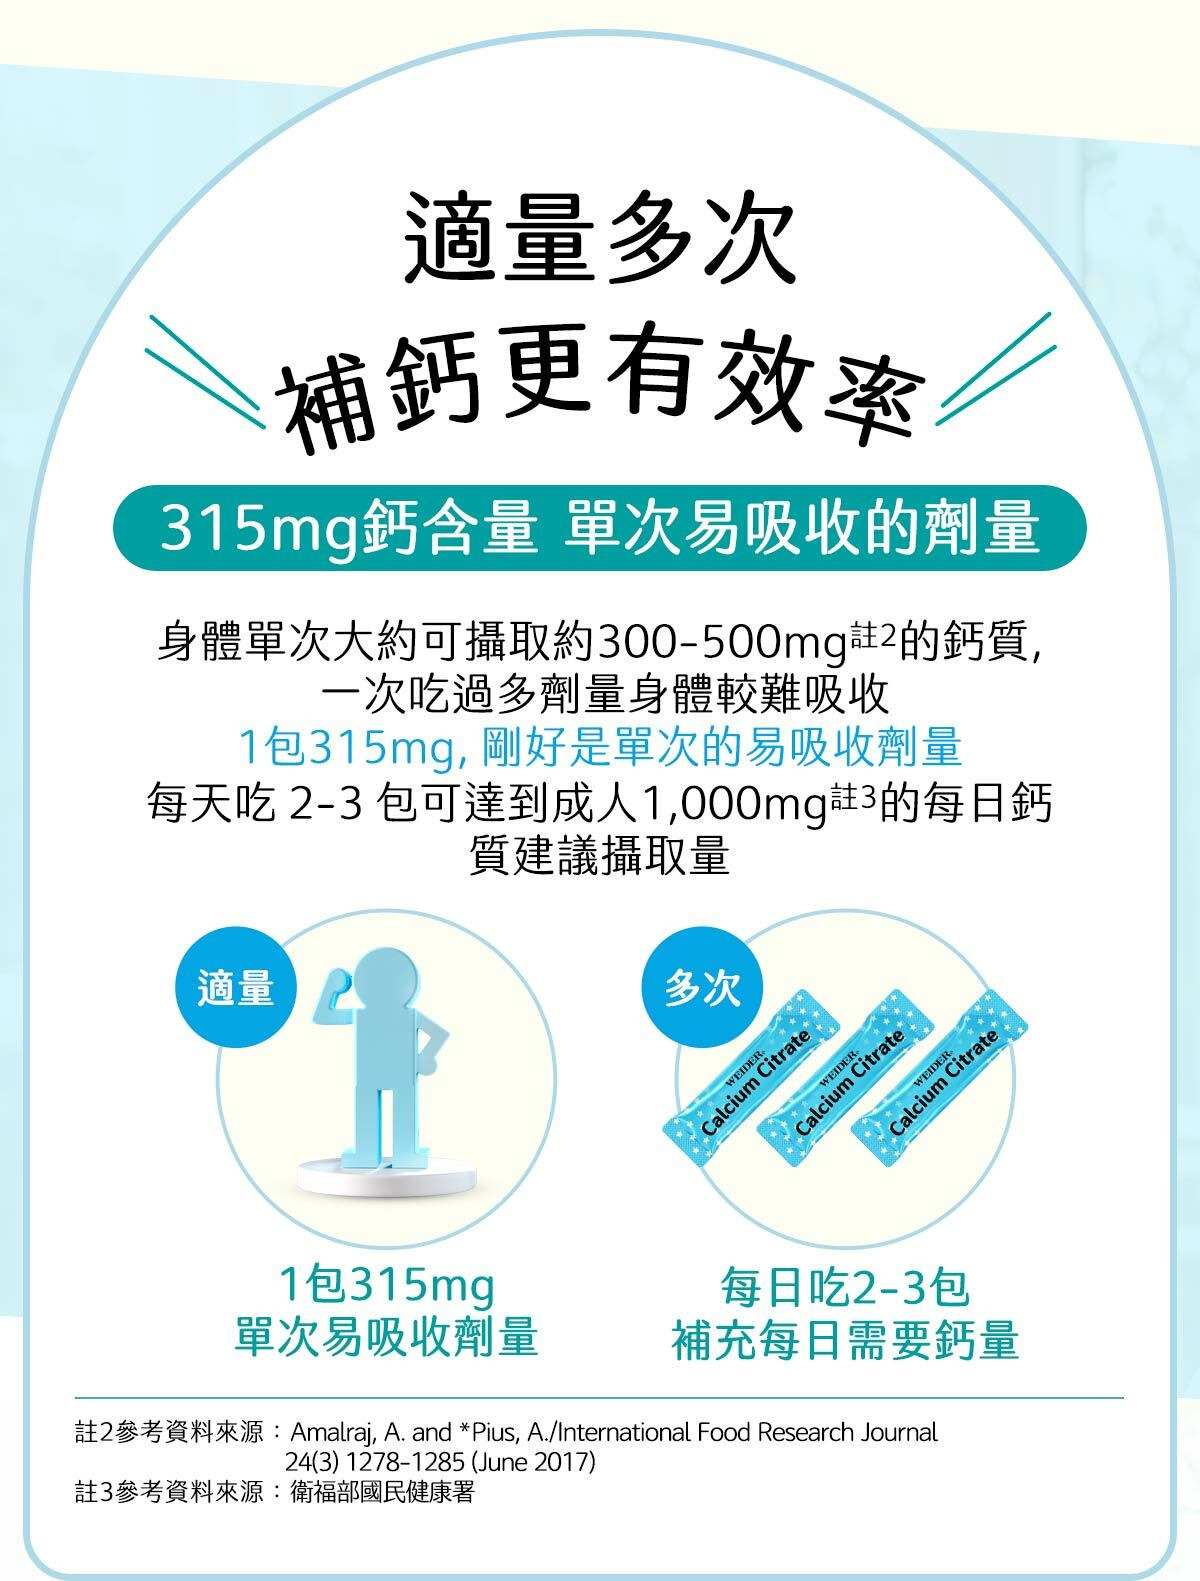 1包檸檬酸鈣315mg，單次易吸收的劑量，成人一天建議服用3包。10大成份之完整蓋吸收與維持配方，鈣質加倍吸收、強健固本更有力。